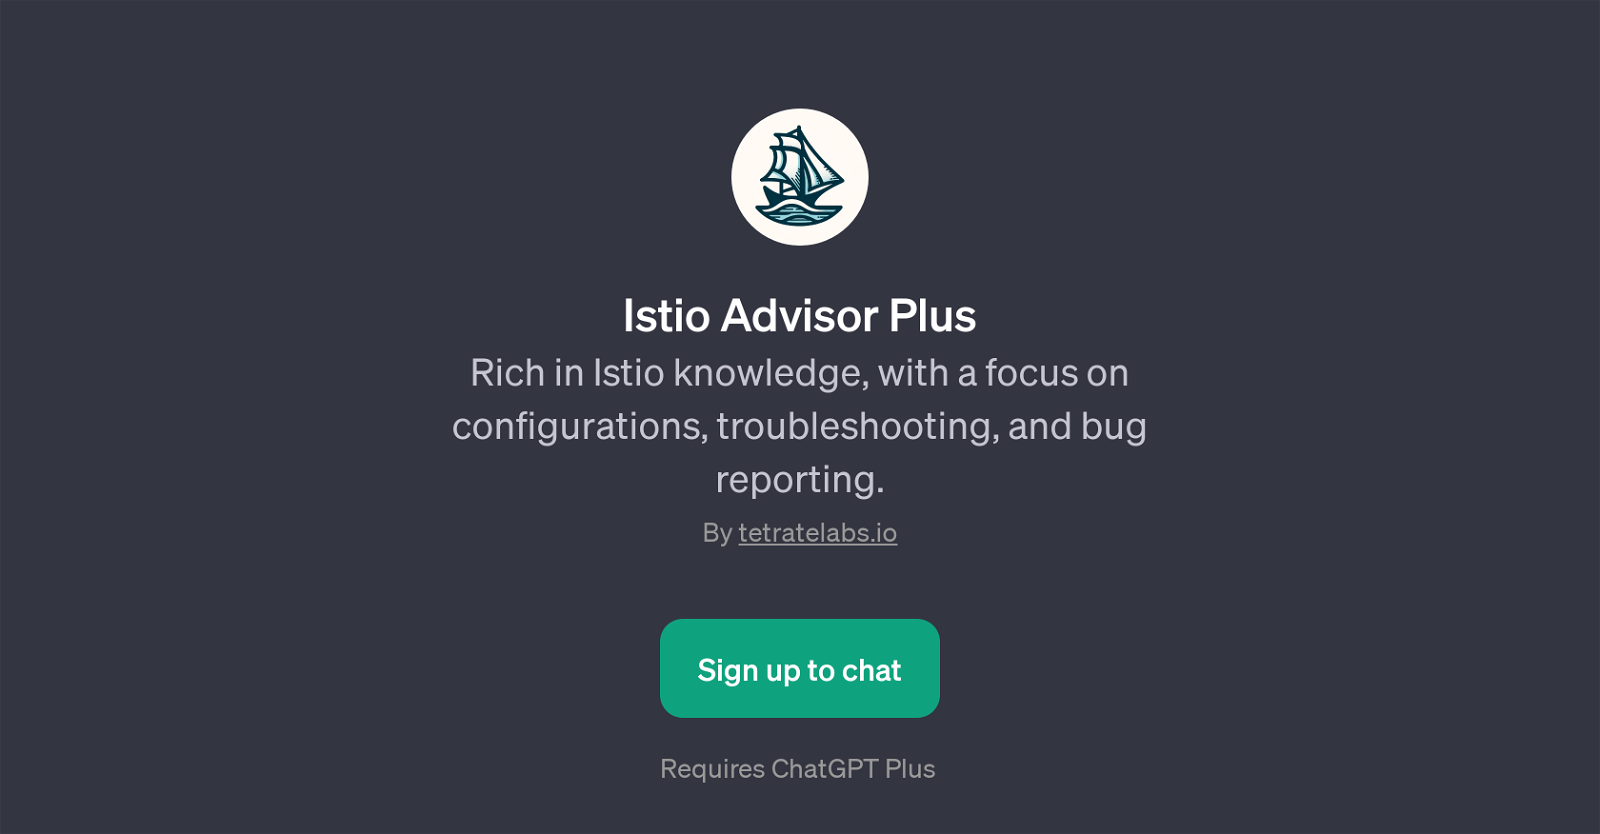 Istio Advisor Plus website